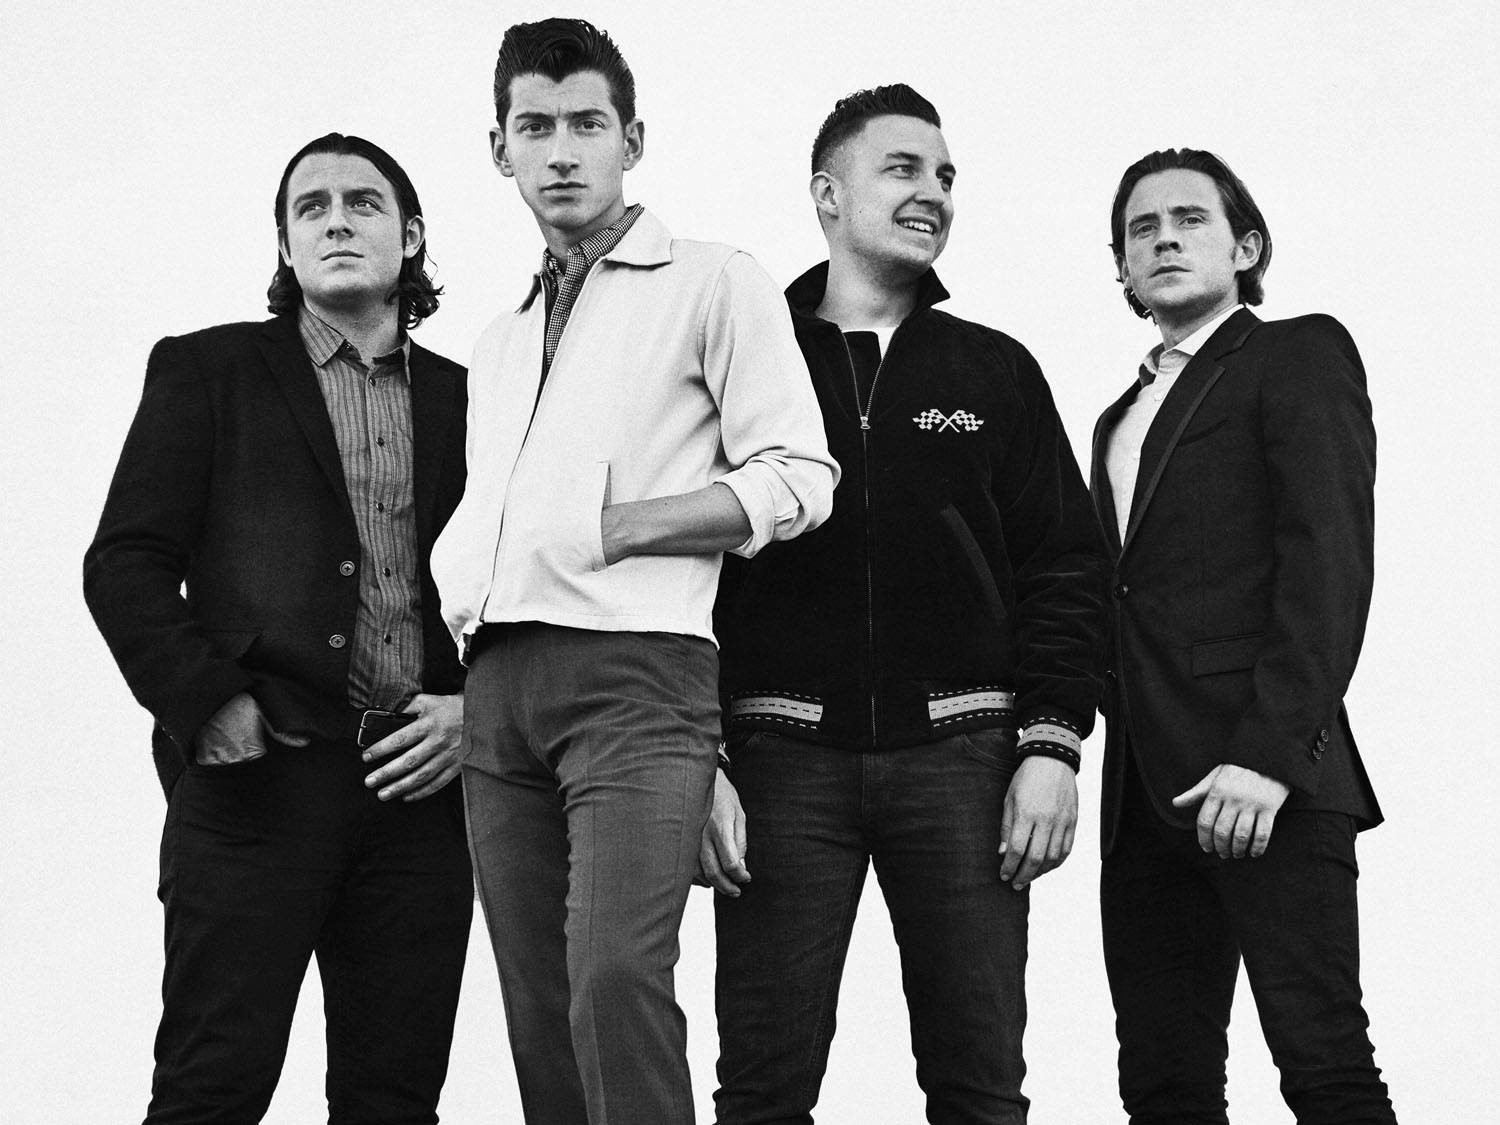 Οι Arctic Monkeys ανακοινώνουν το νέο τους άλμπουμ “Tranquility Base Hotel & Casino” μέσα από ένα teaser